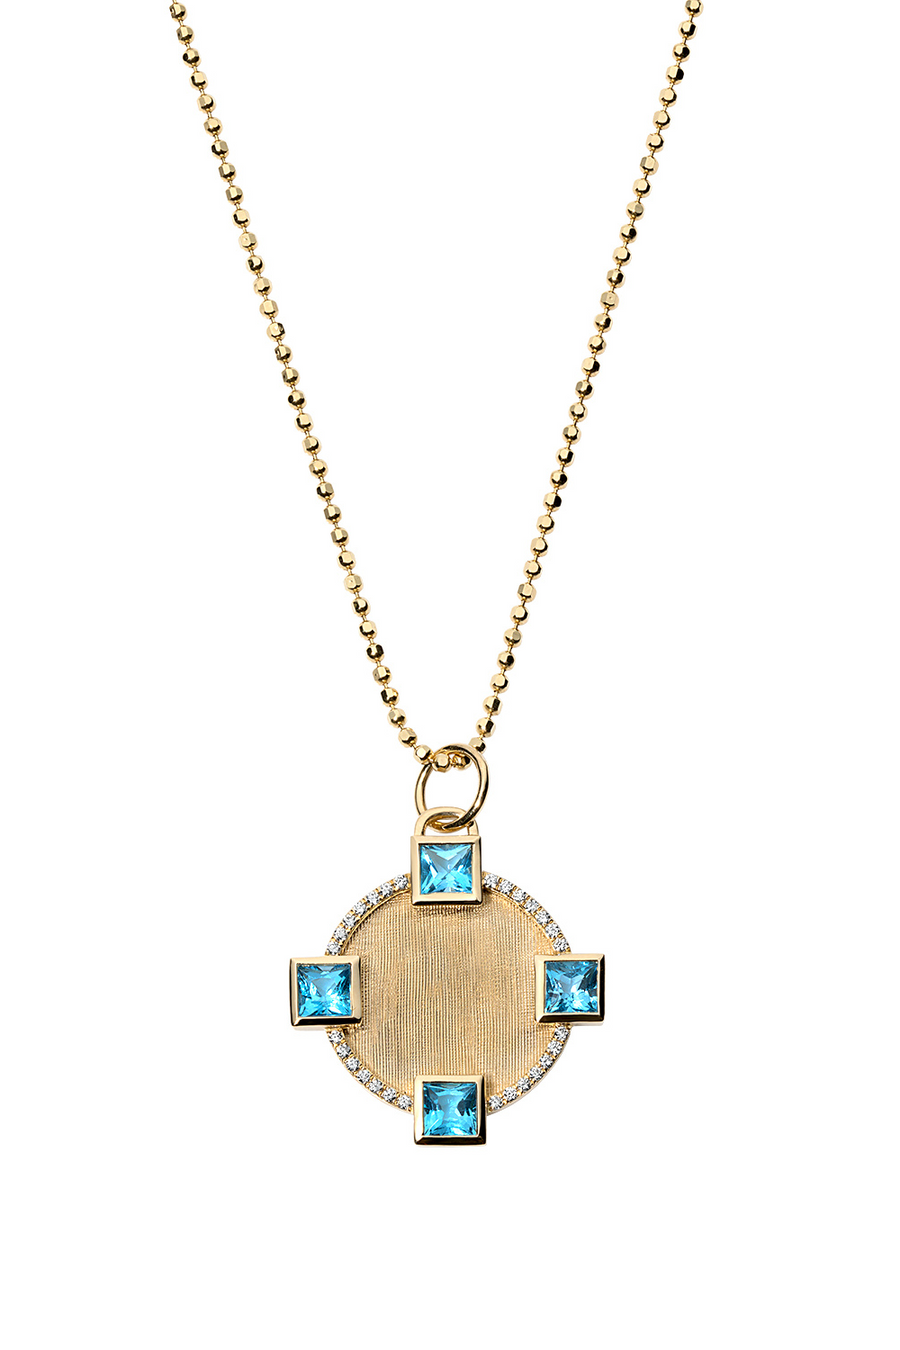 Blue topaz round pendant in florentine 18k gold.